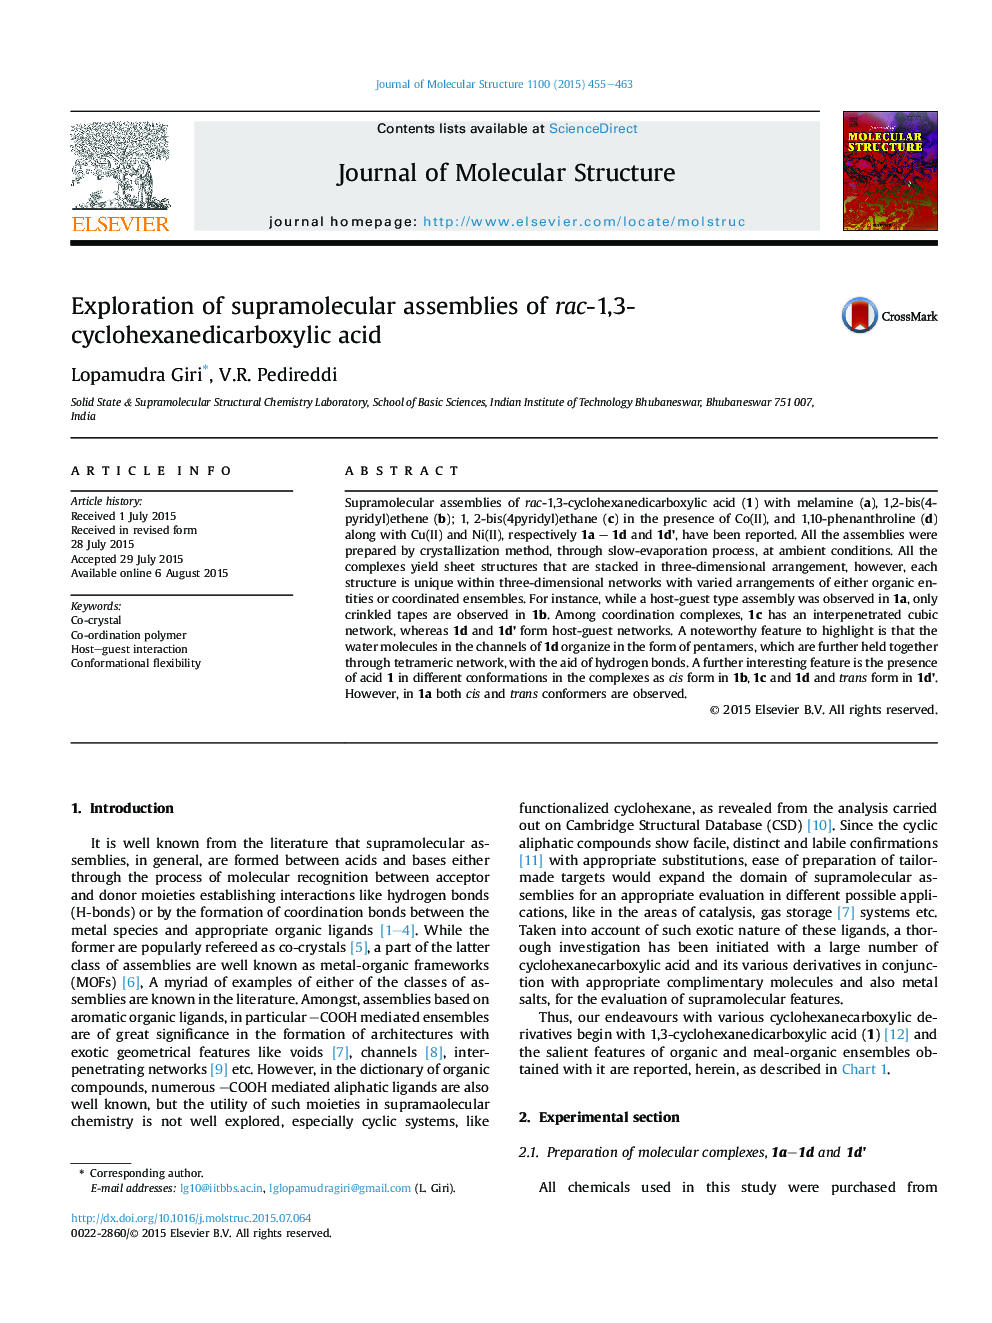 Exploration of supramolecular assemblies of rac-1,3-cyclohexanedicarboxylic acid